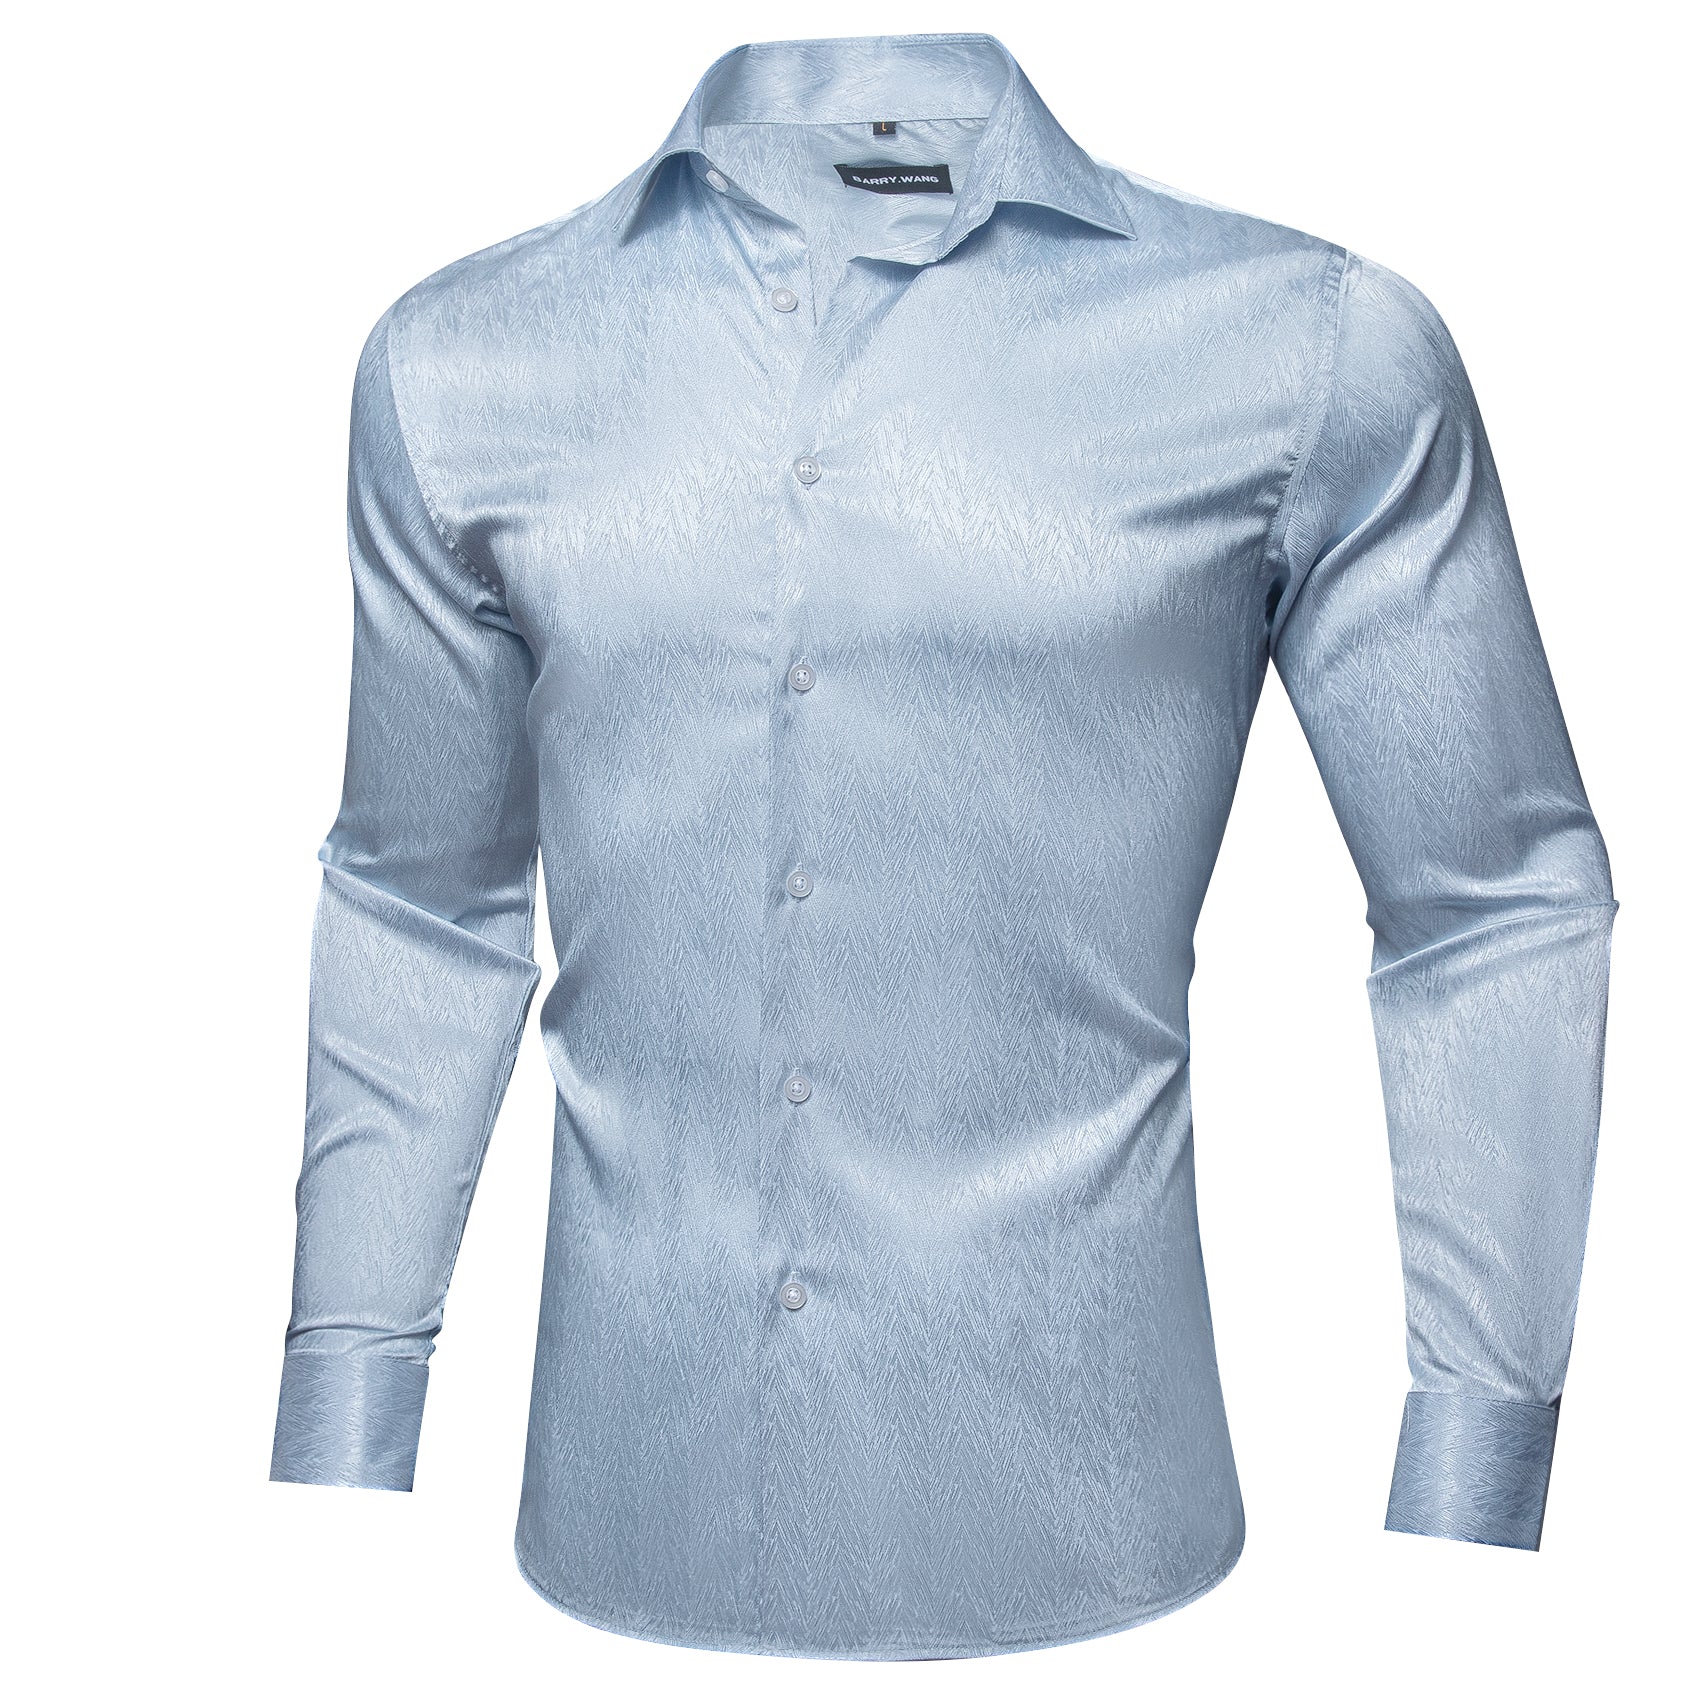 Barry.Wang Button Down Shirt Light Blue Solid Silk Men's Long Sleeve Shirt Classic